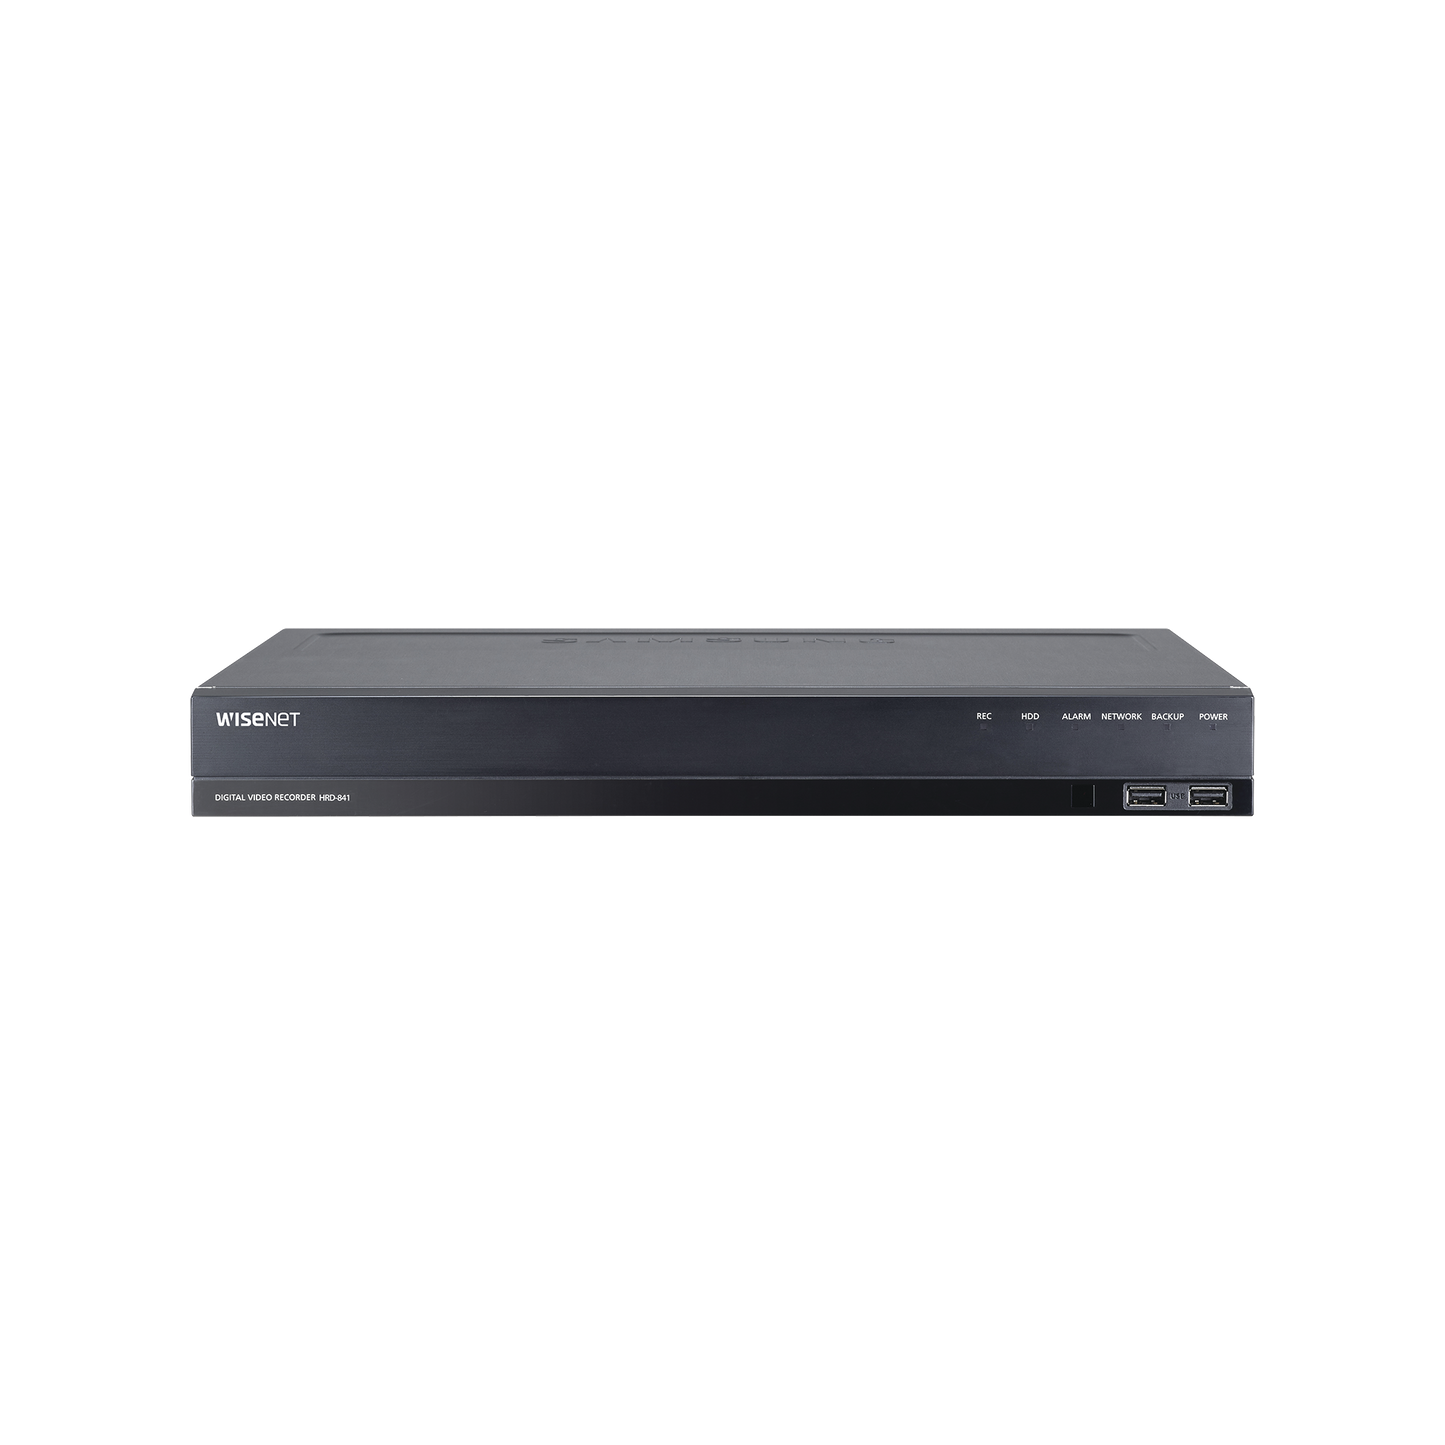 DVR 8 Canales hasta 4 Megapixel / Soporta 4 Tecnologías (AHD, TVI, CVI, CVBS) / Hasta 2HDDs / Entradas y Salidas de Audio y Alarma